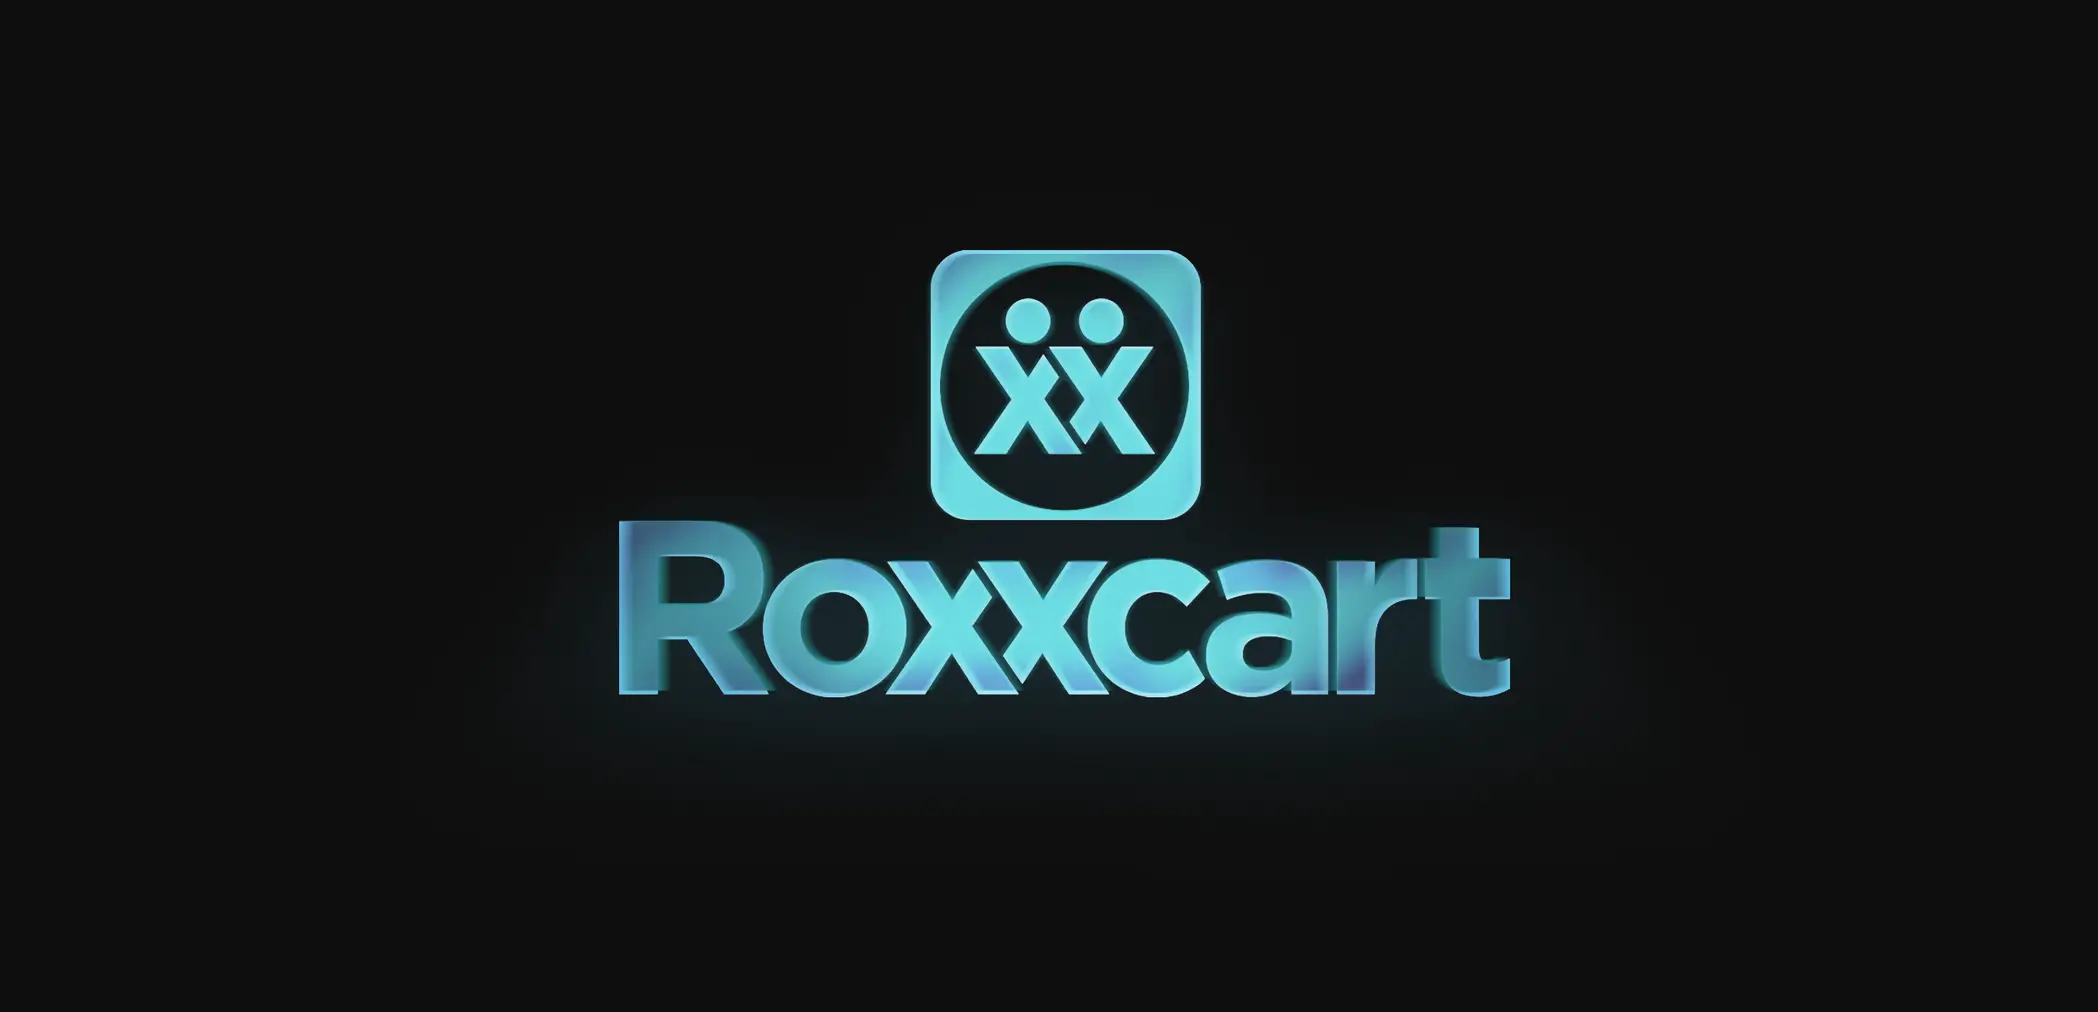 Roxxcart.com